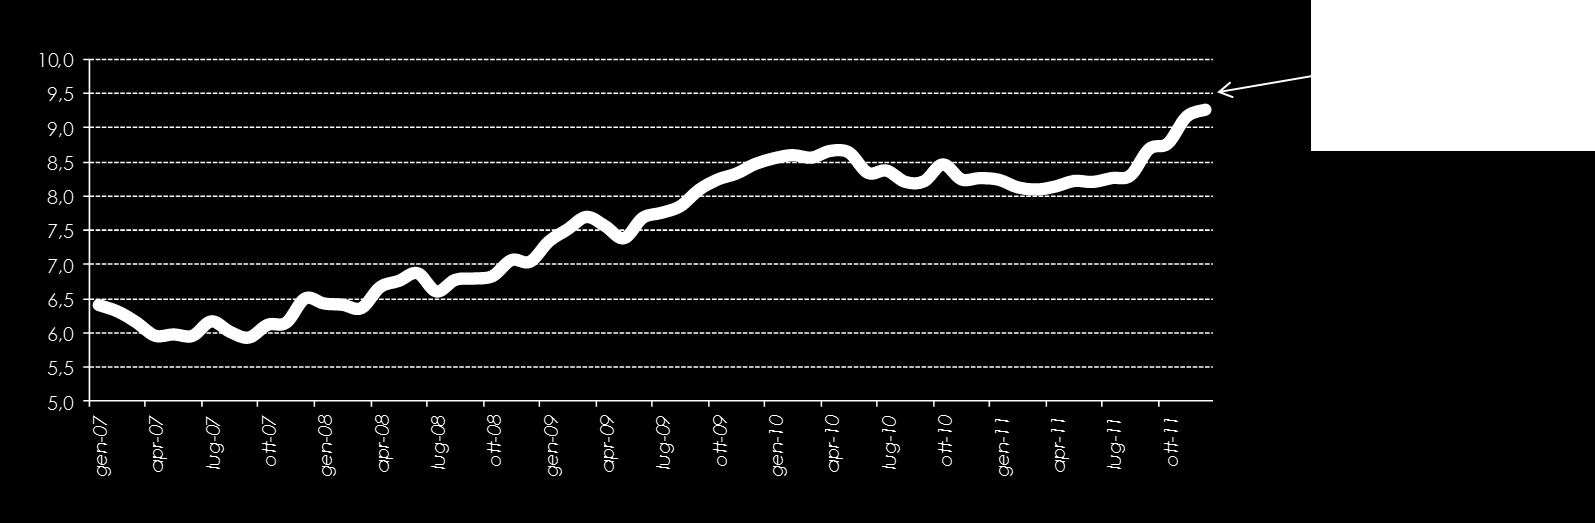 Il contesto economico Il lavoro «Tiene» l occupazione, ma non mancano i segnali preoccupanti La disoccupazione in Italia resta su livelli relativamente contenuti; nel secondo semestre 2011 il tasso